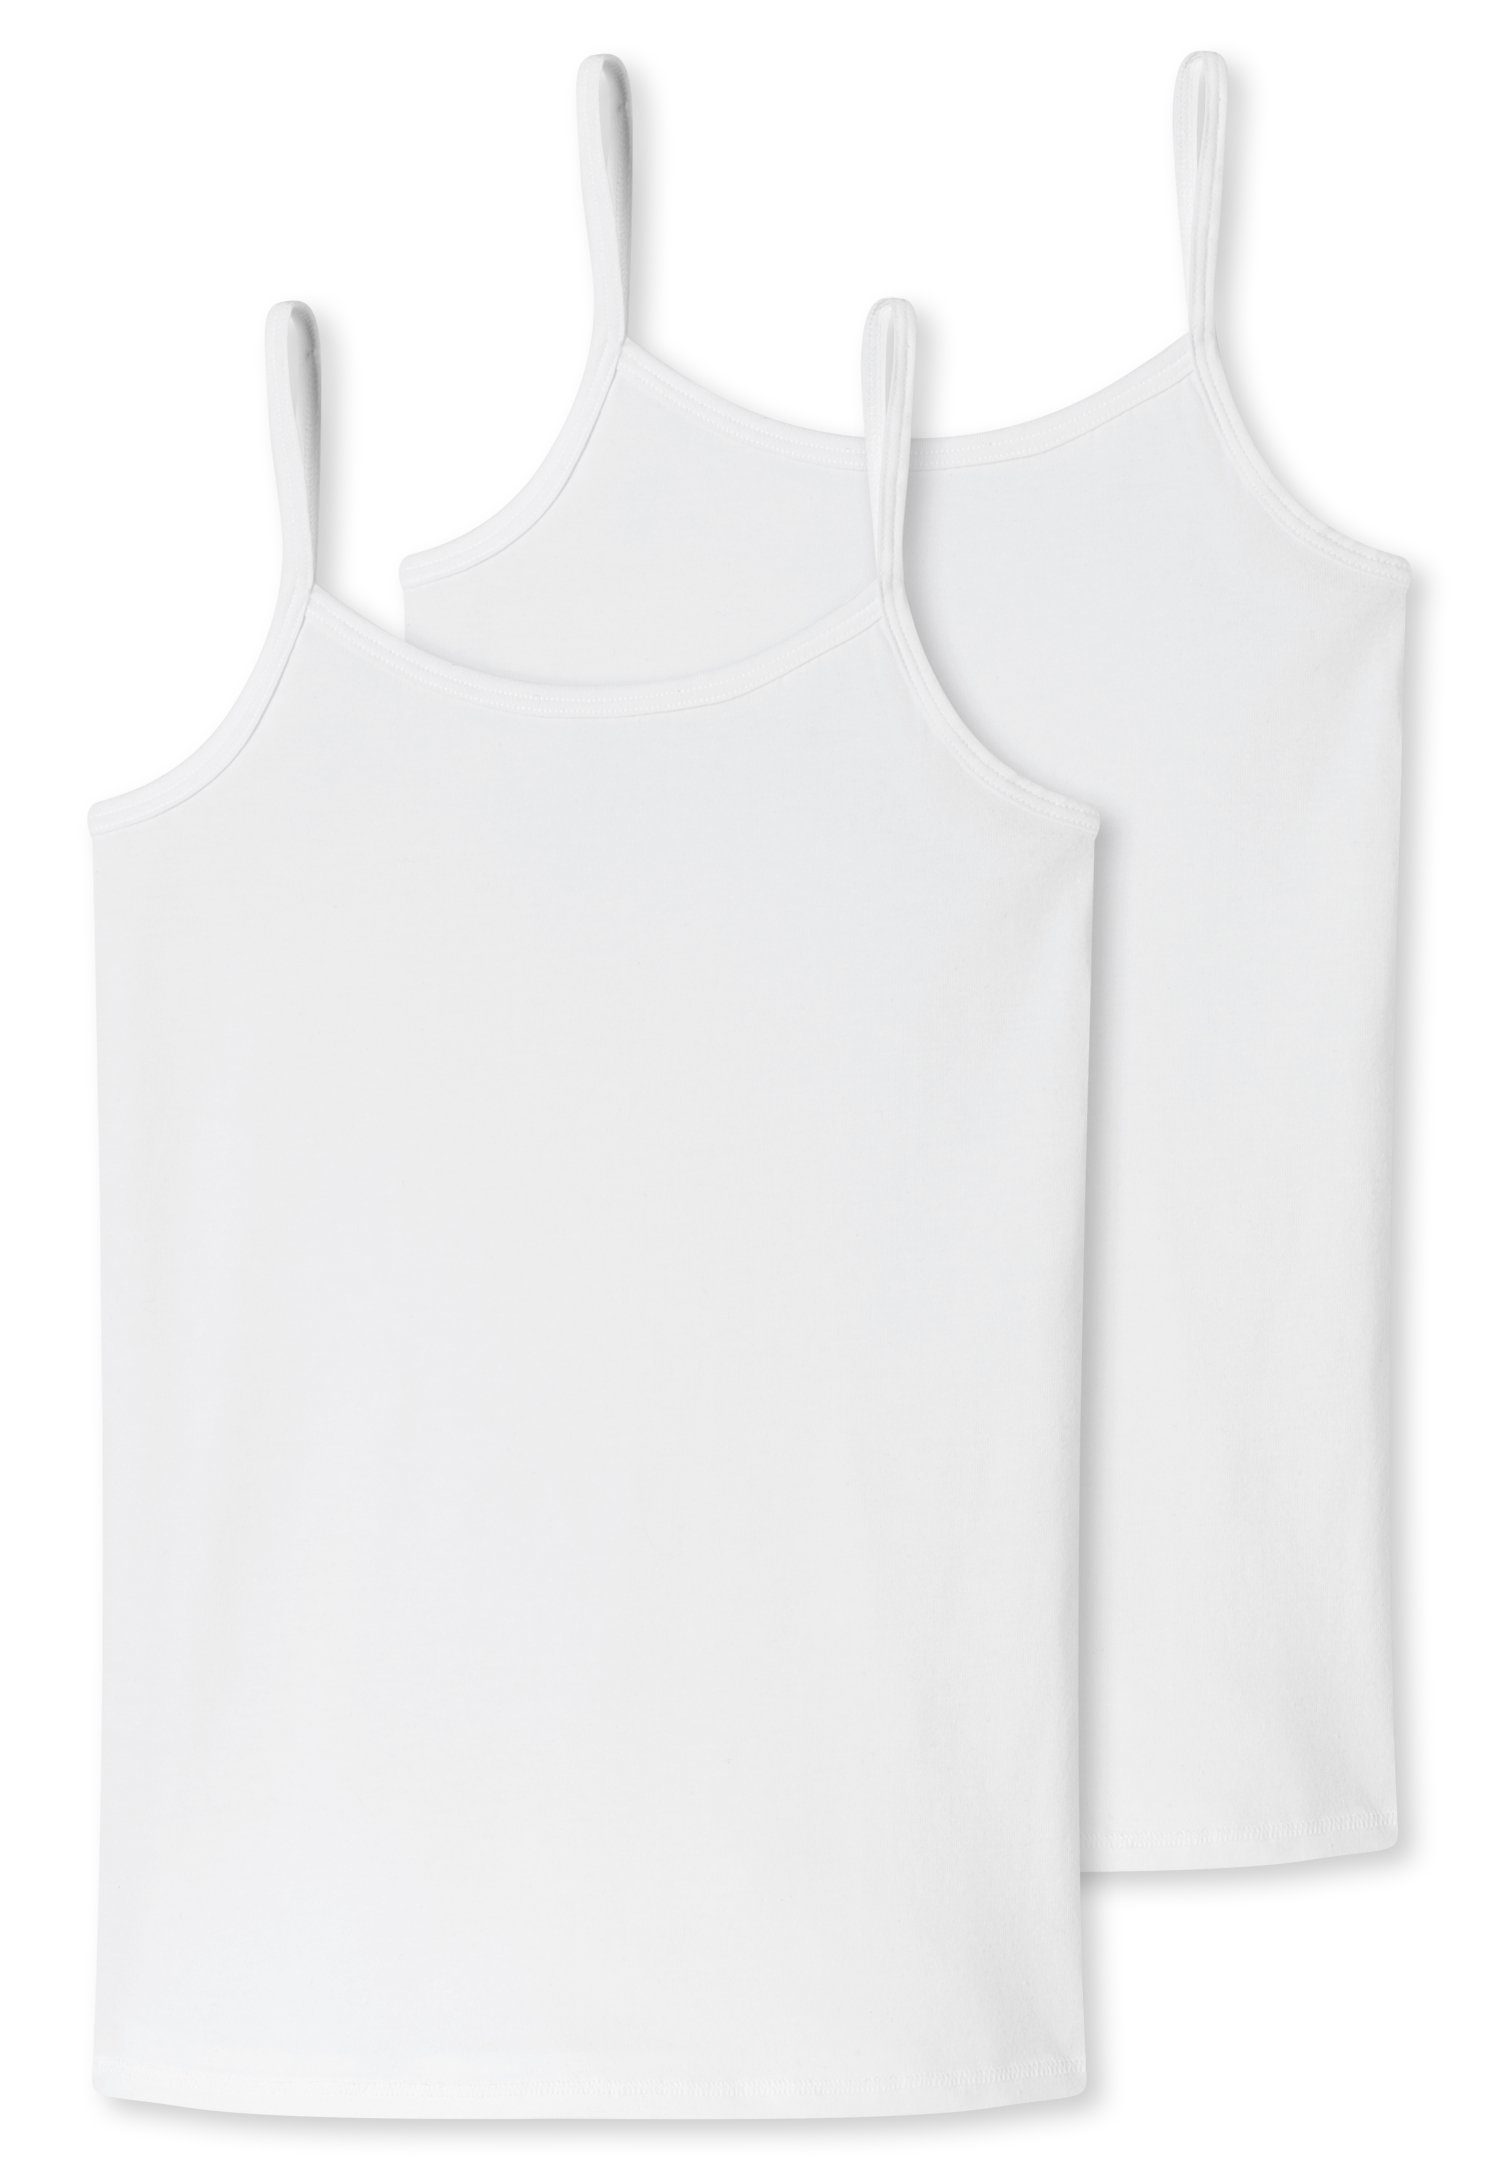 Unterhemd schmalen mit (2er-Pack) weiß Trägern Schiesser